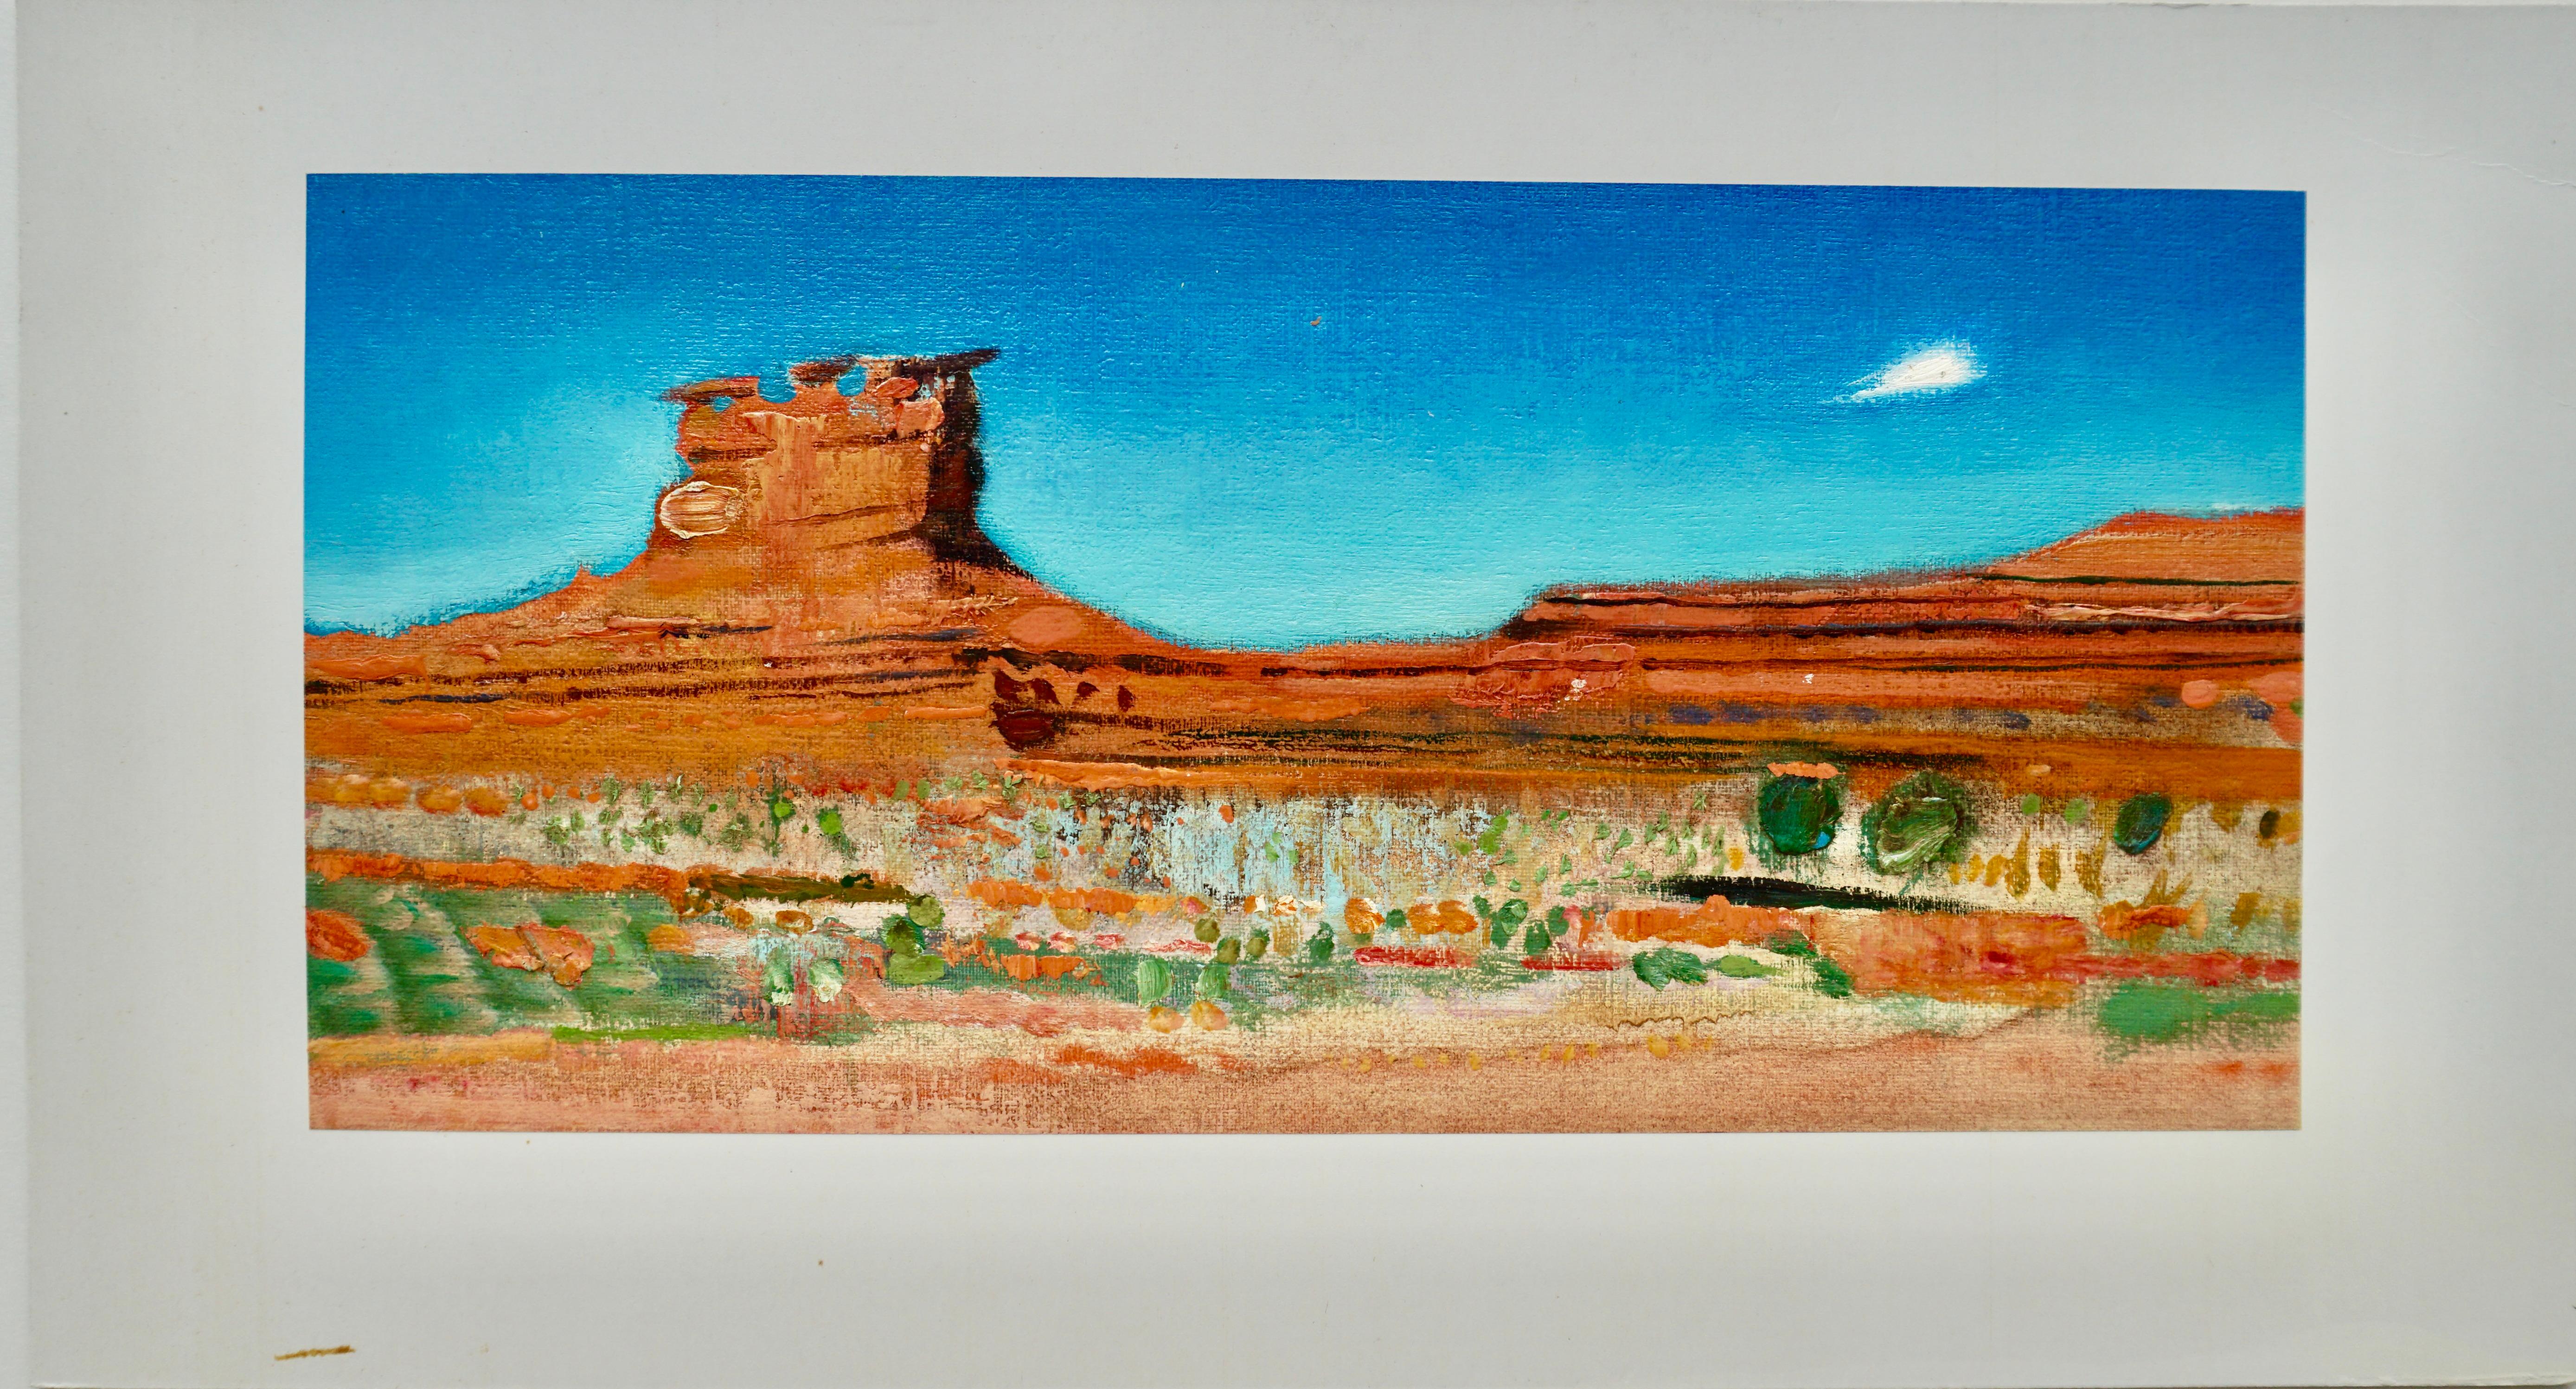 René Genis Landscape Painting - "Monument Valley" 